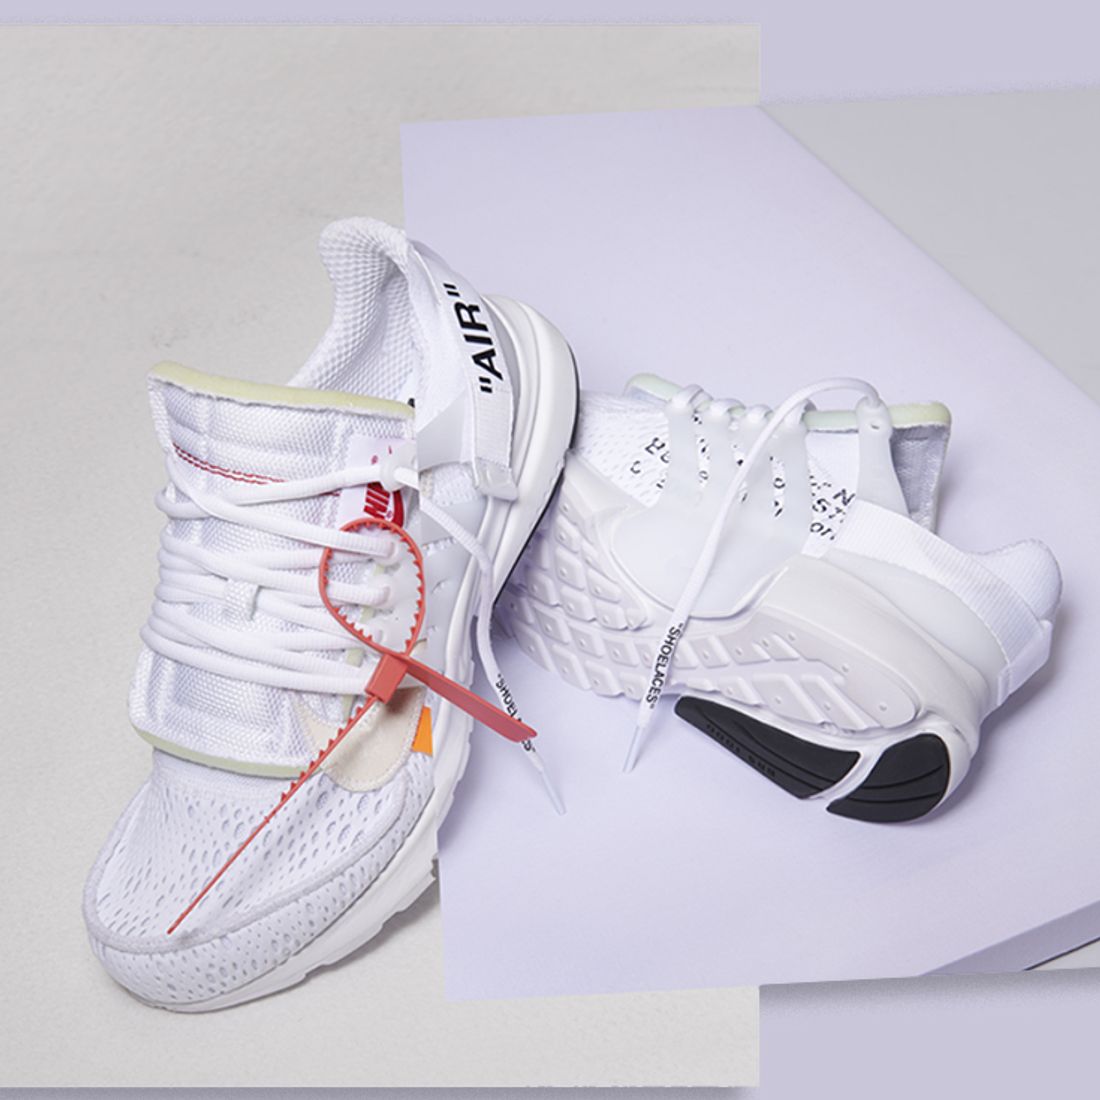 bulto Contrapartida Lugar de la noche Off-White x Nike Presto 'White' Official Release Info - Sneaker Freaker